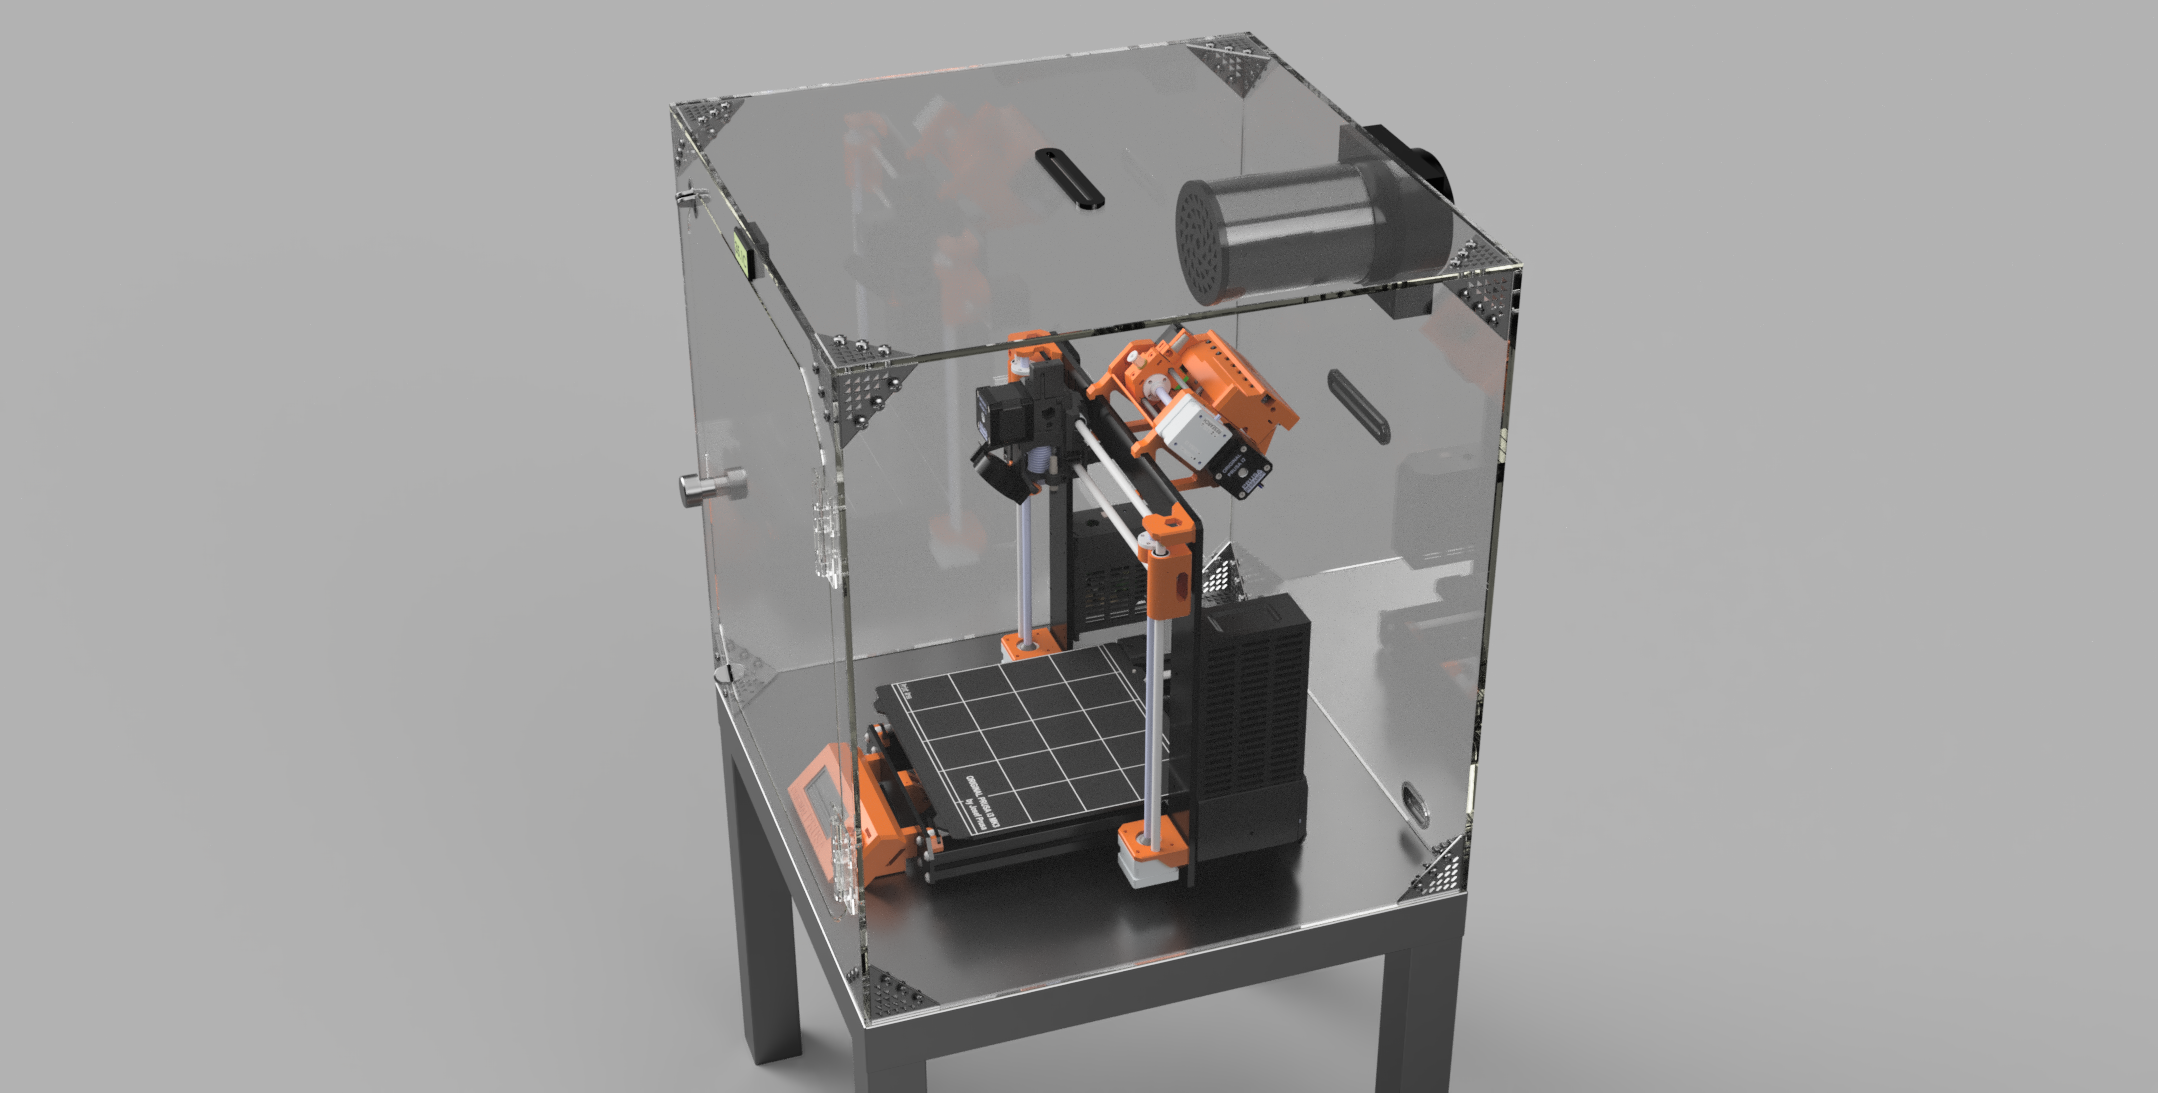 Comgrow T500 3D Printer Enclosure - Coming Soon